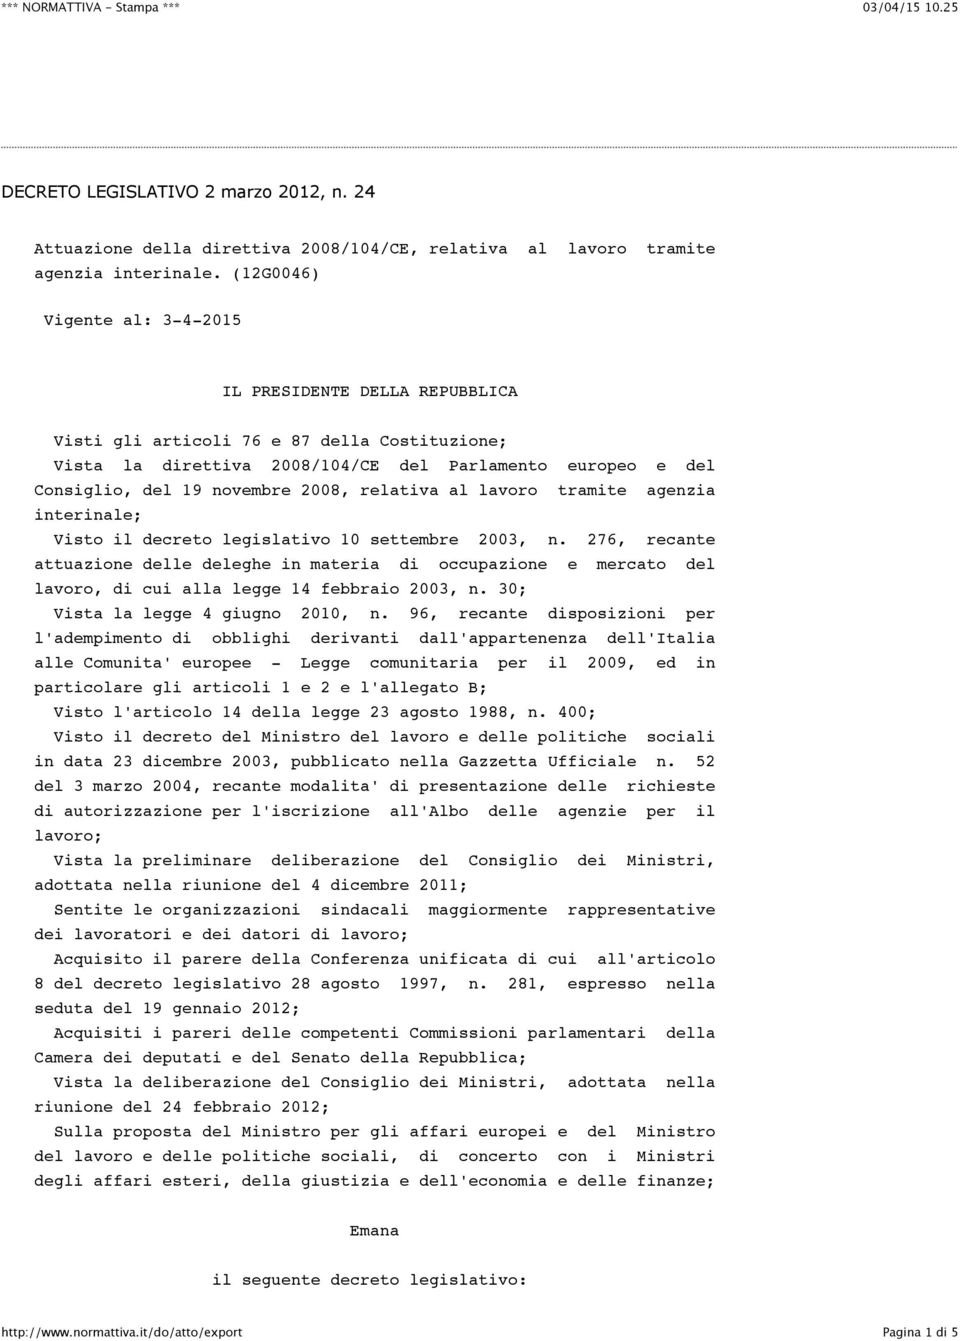 2008, relativa al lavoro tramite agenzia interinale; Visto il decreto legislativo 10 settembre 2003, n.